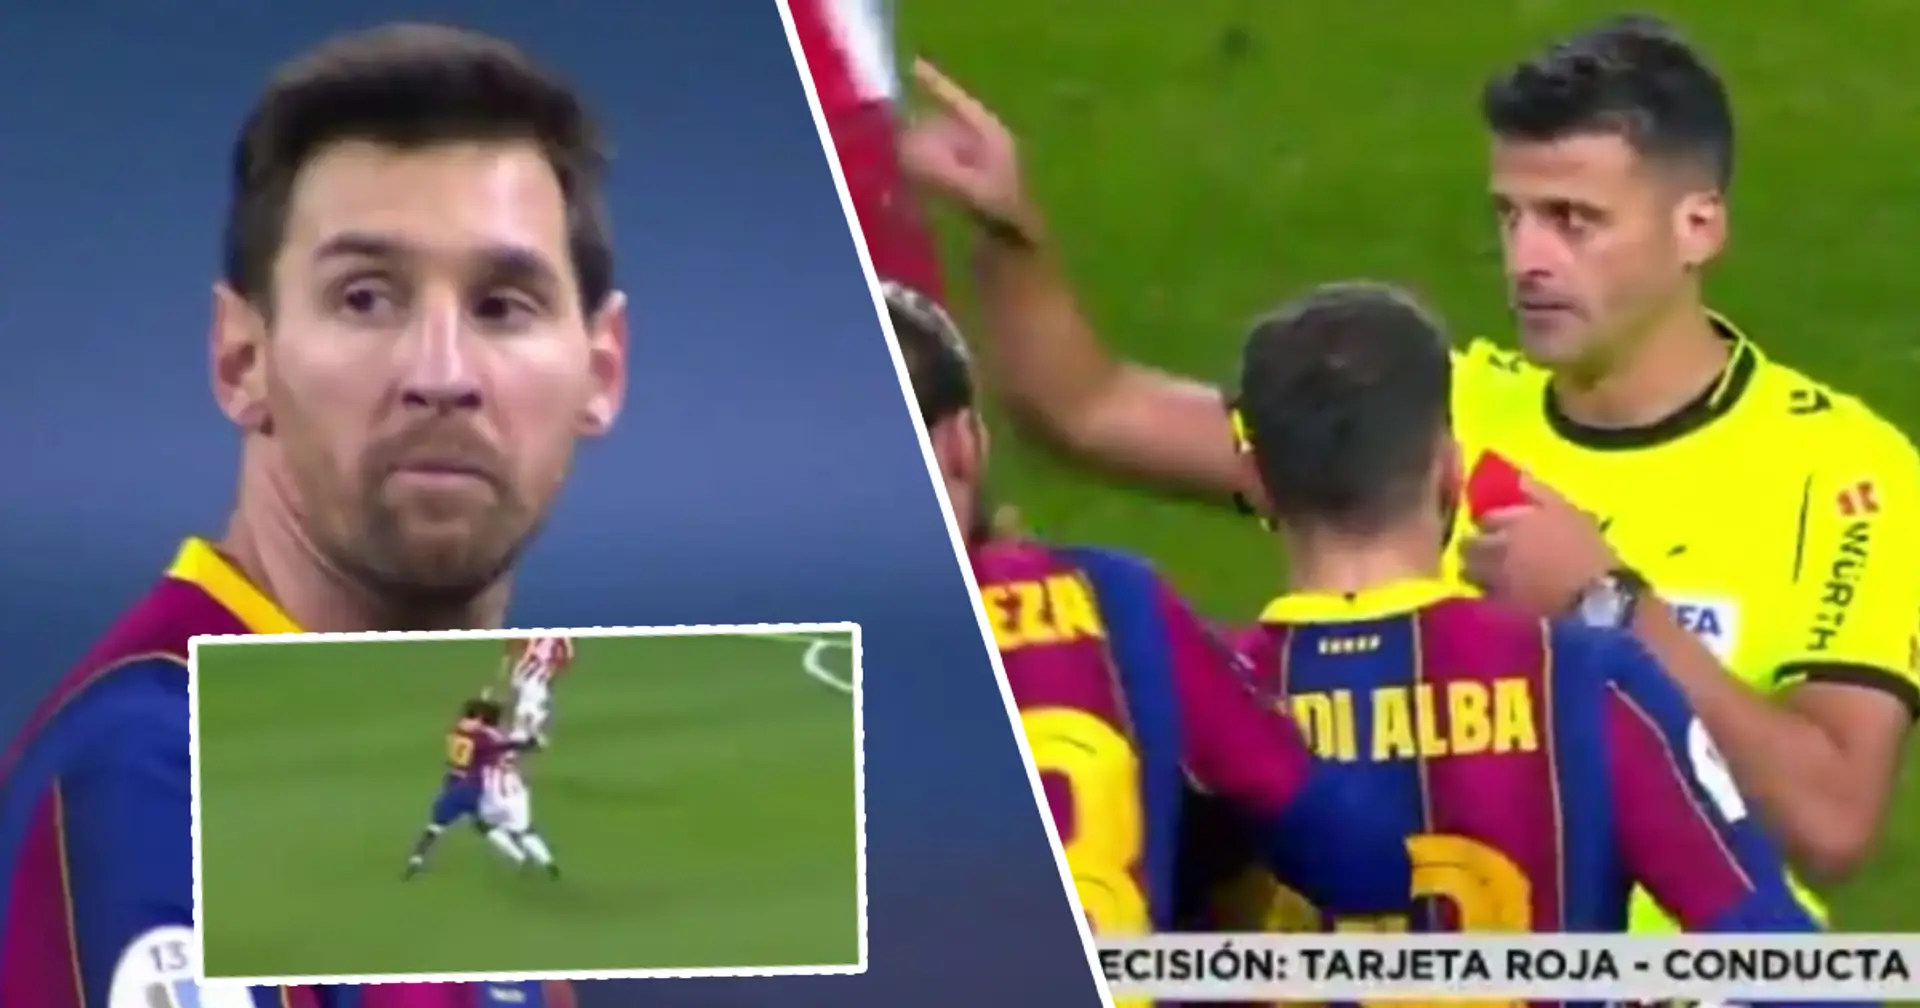 Leo Messi est envoyé pour la première fois avec le Barça. Il a méchamment frappé son adversaire par frustration